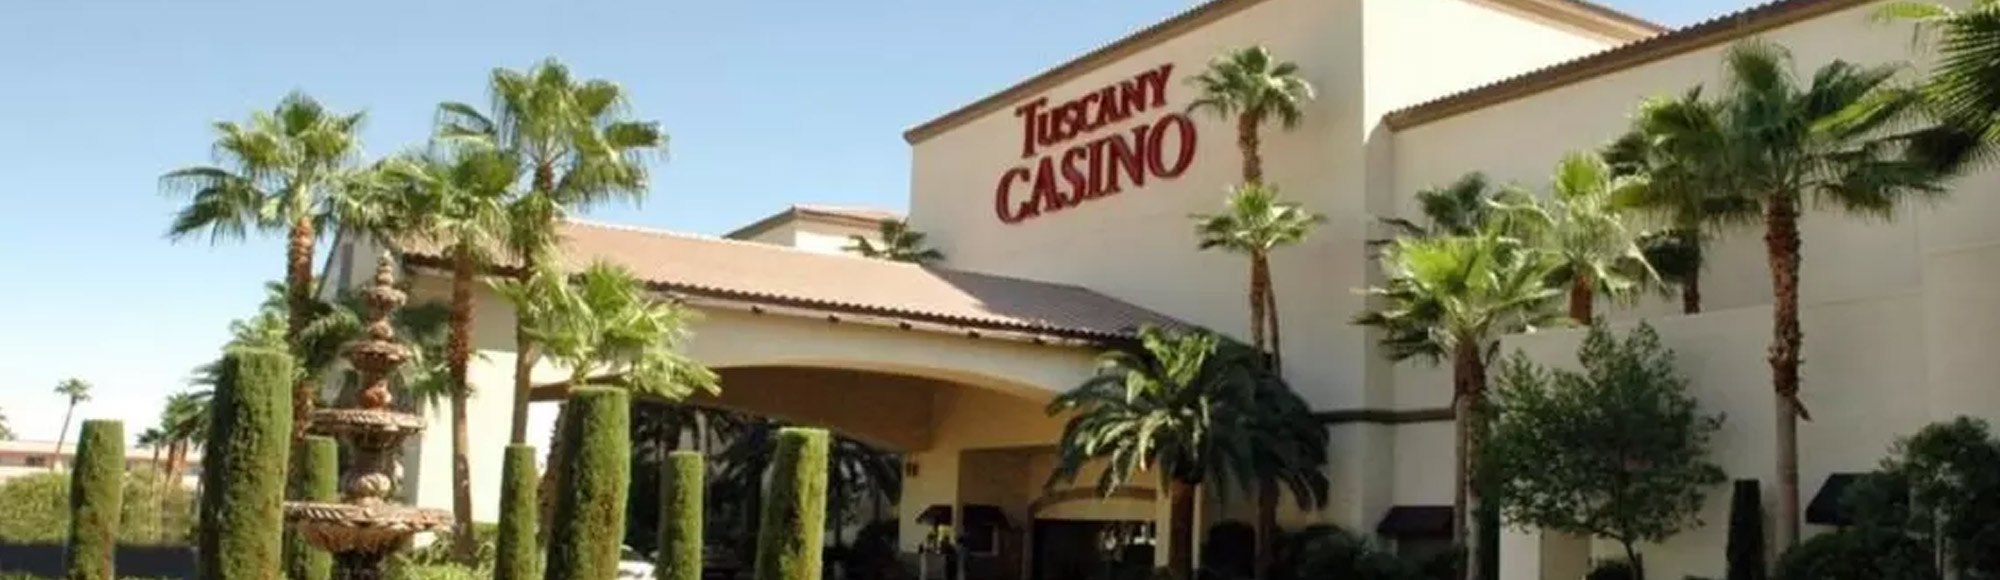 Tuscany Suites Casino Hotel In Las Vegas Vegas Com